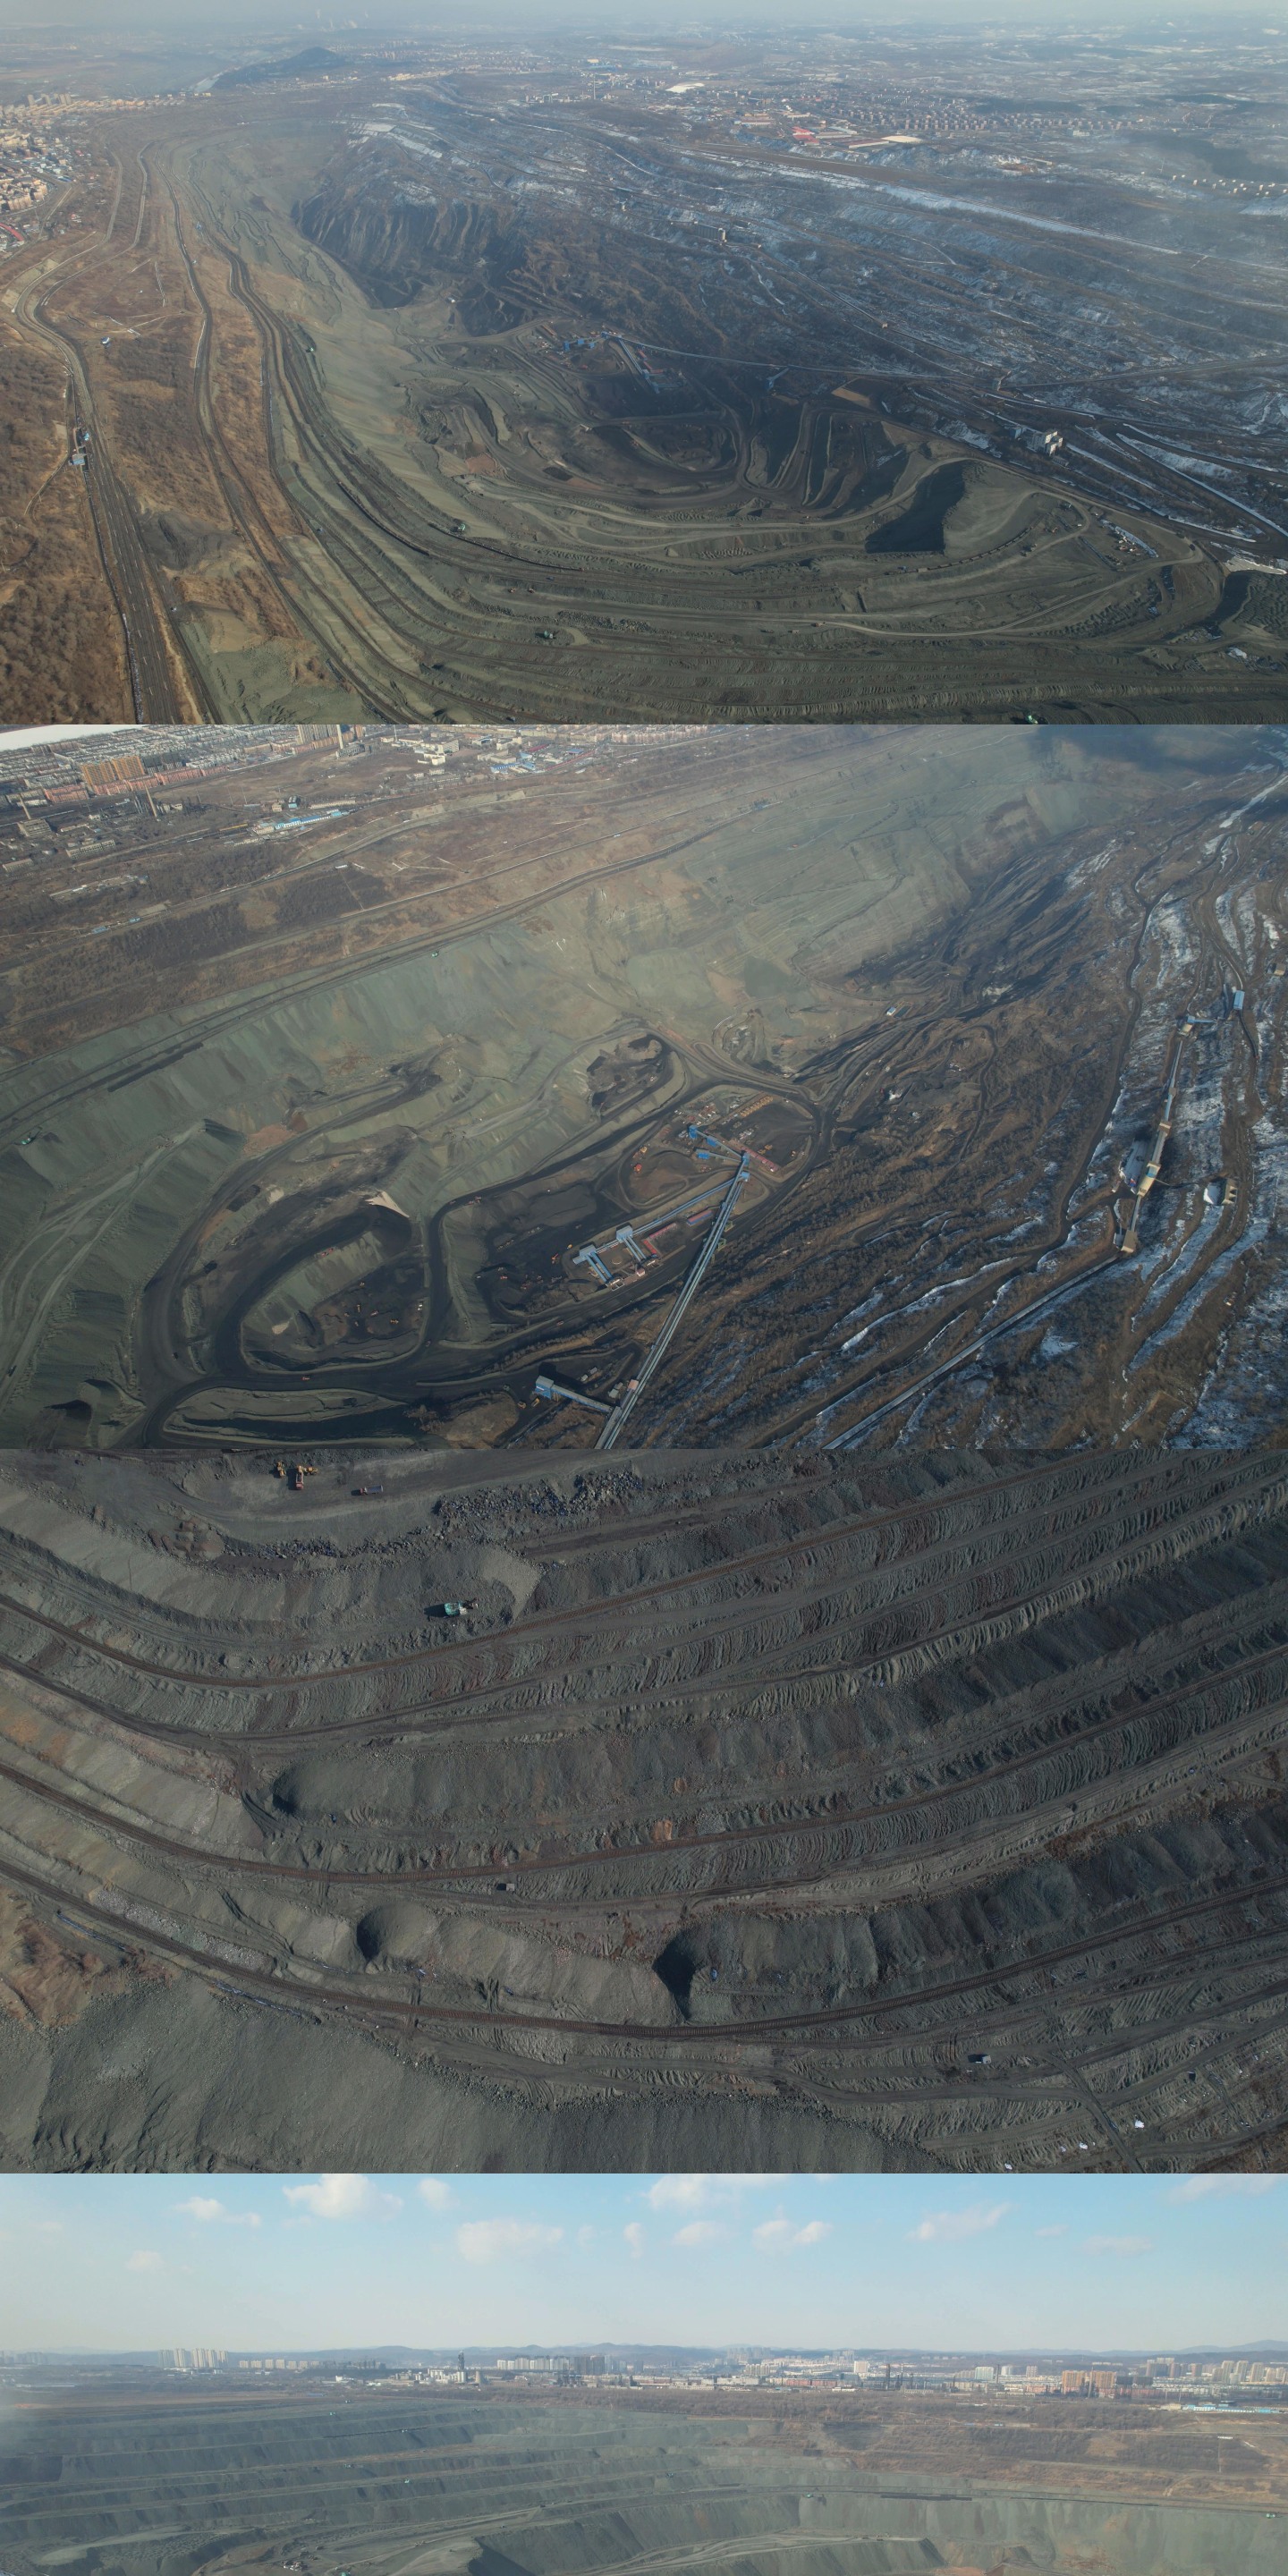 煤、煤炭、露天煤矿、煤矿开采、矿坑、矿产